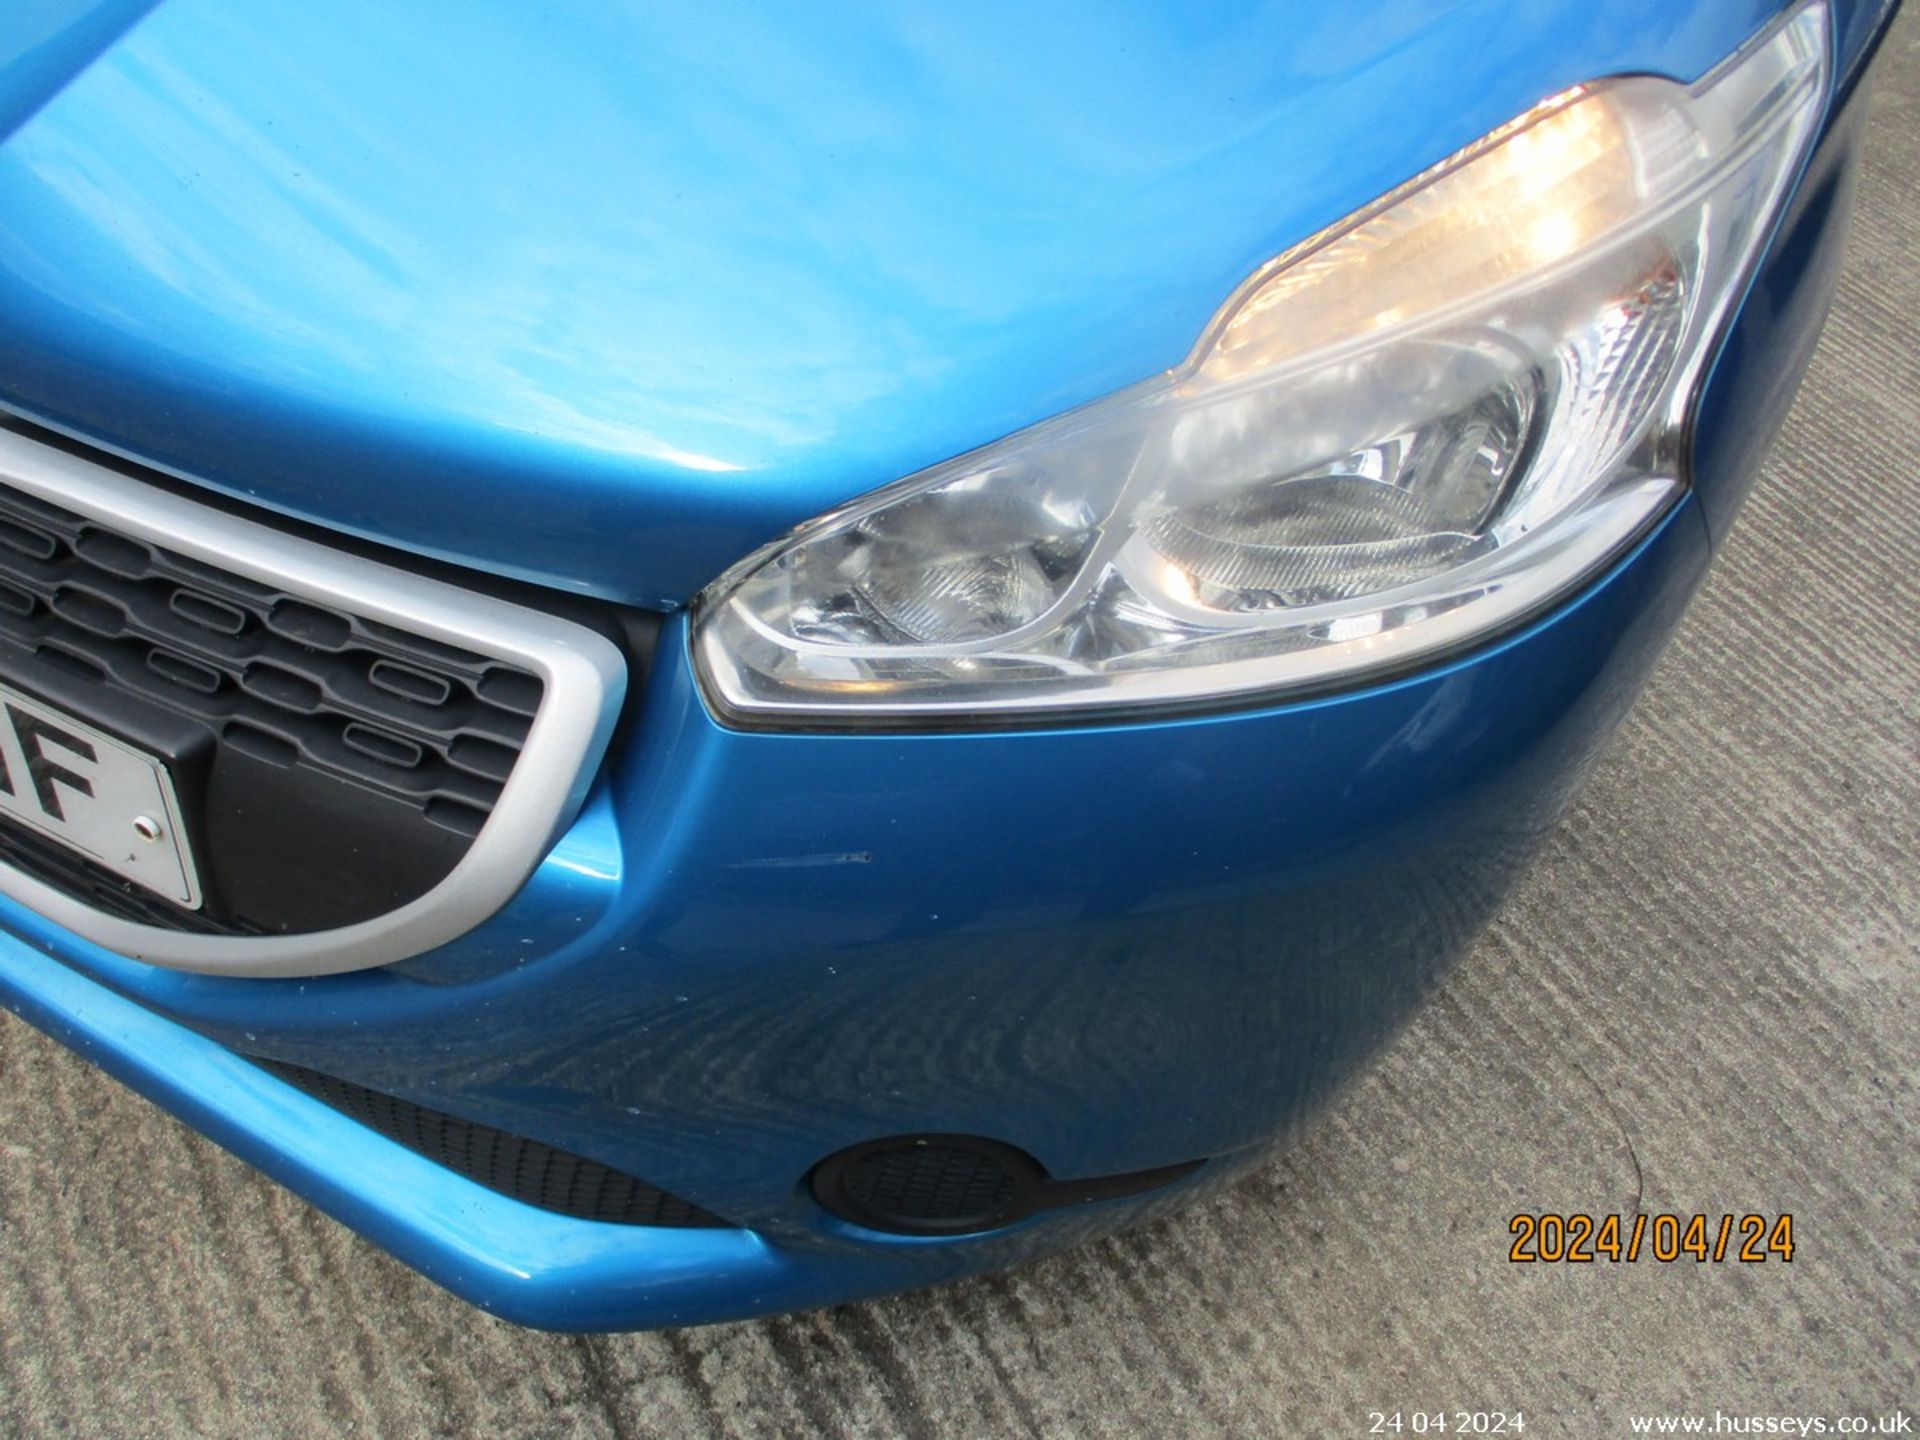 13/62 PEUGEOT 208 ACCESS PLUS - 1199cc 5dr Hatchback (Blue, 83k) - Image 17 of 18